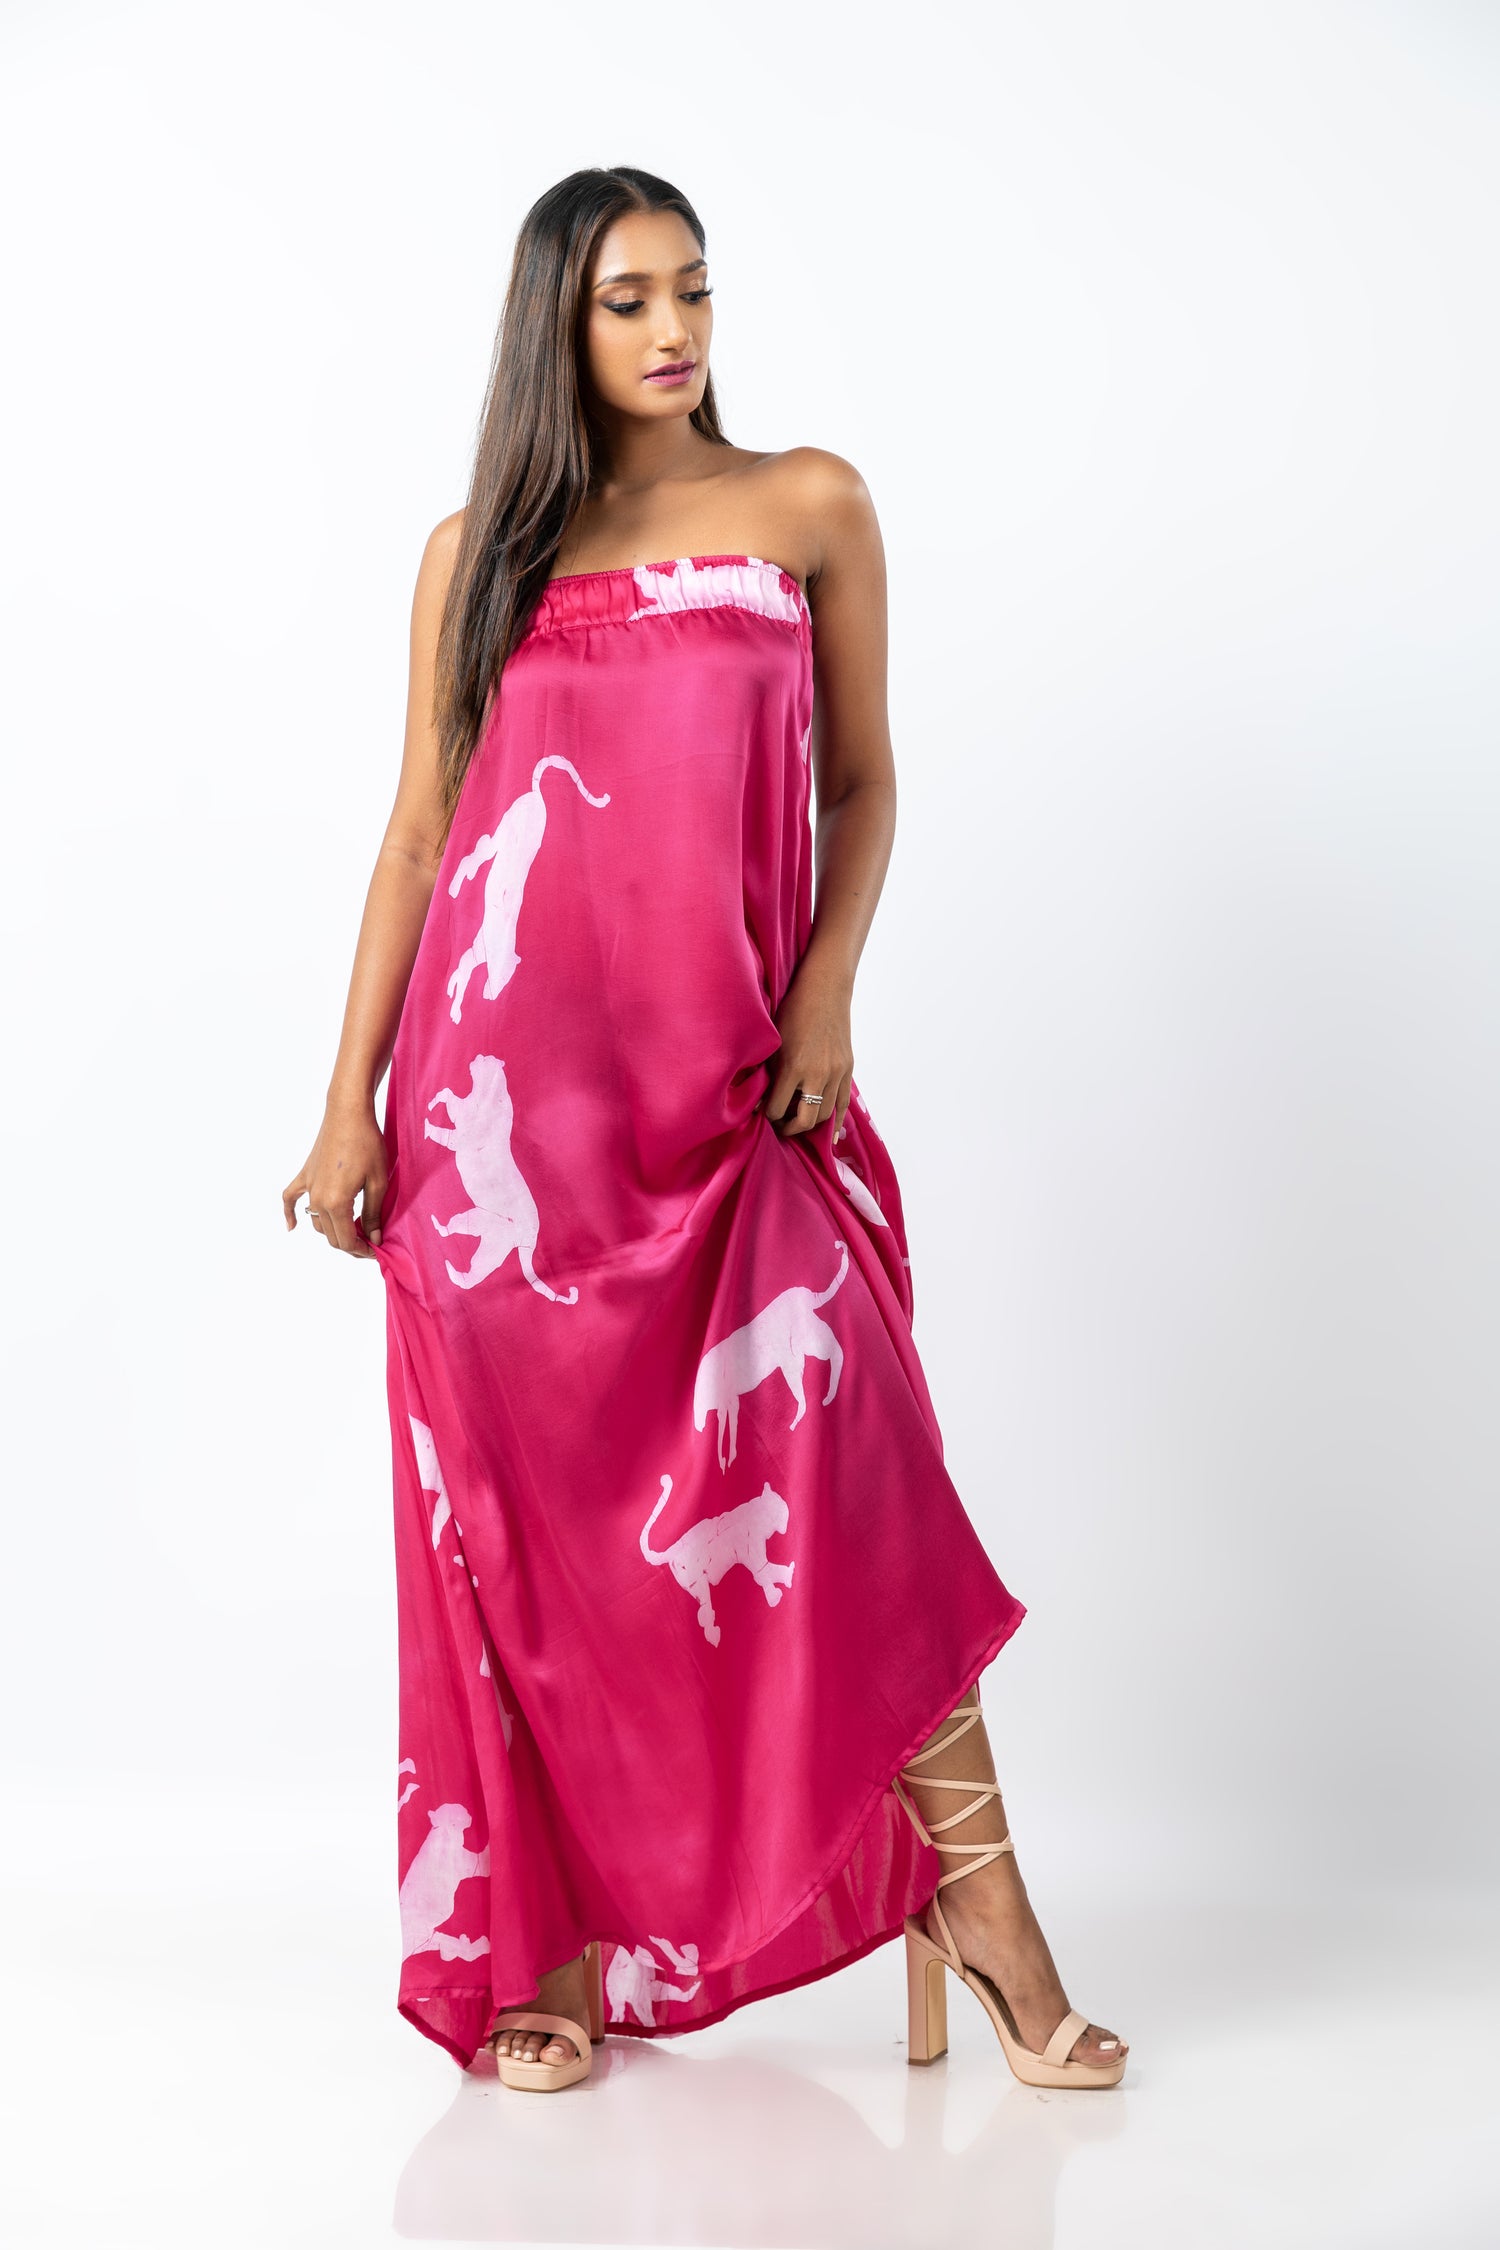 Ravishing Pink Tiger Tube Dress